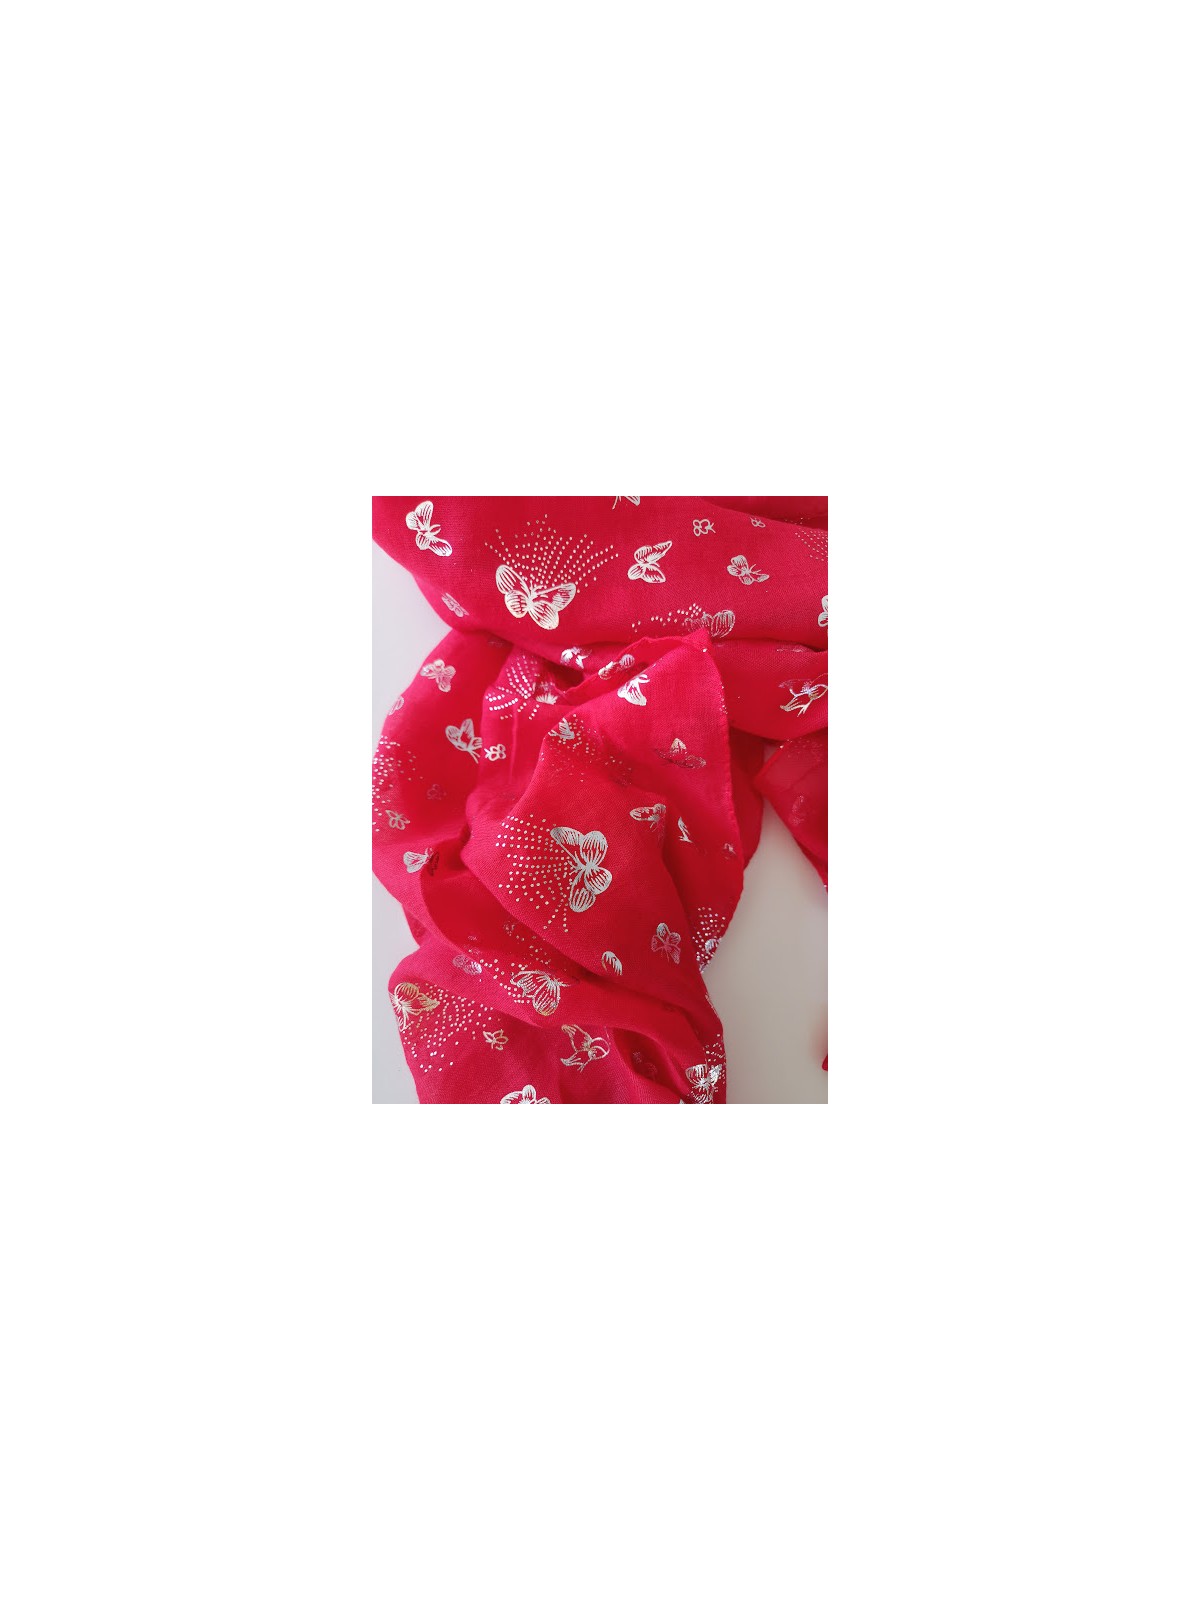 Foulard rouge avec papillons couleur argent léger  l 3 vue des détails l Tilleulmenthe boutique de mode femme en ligne